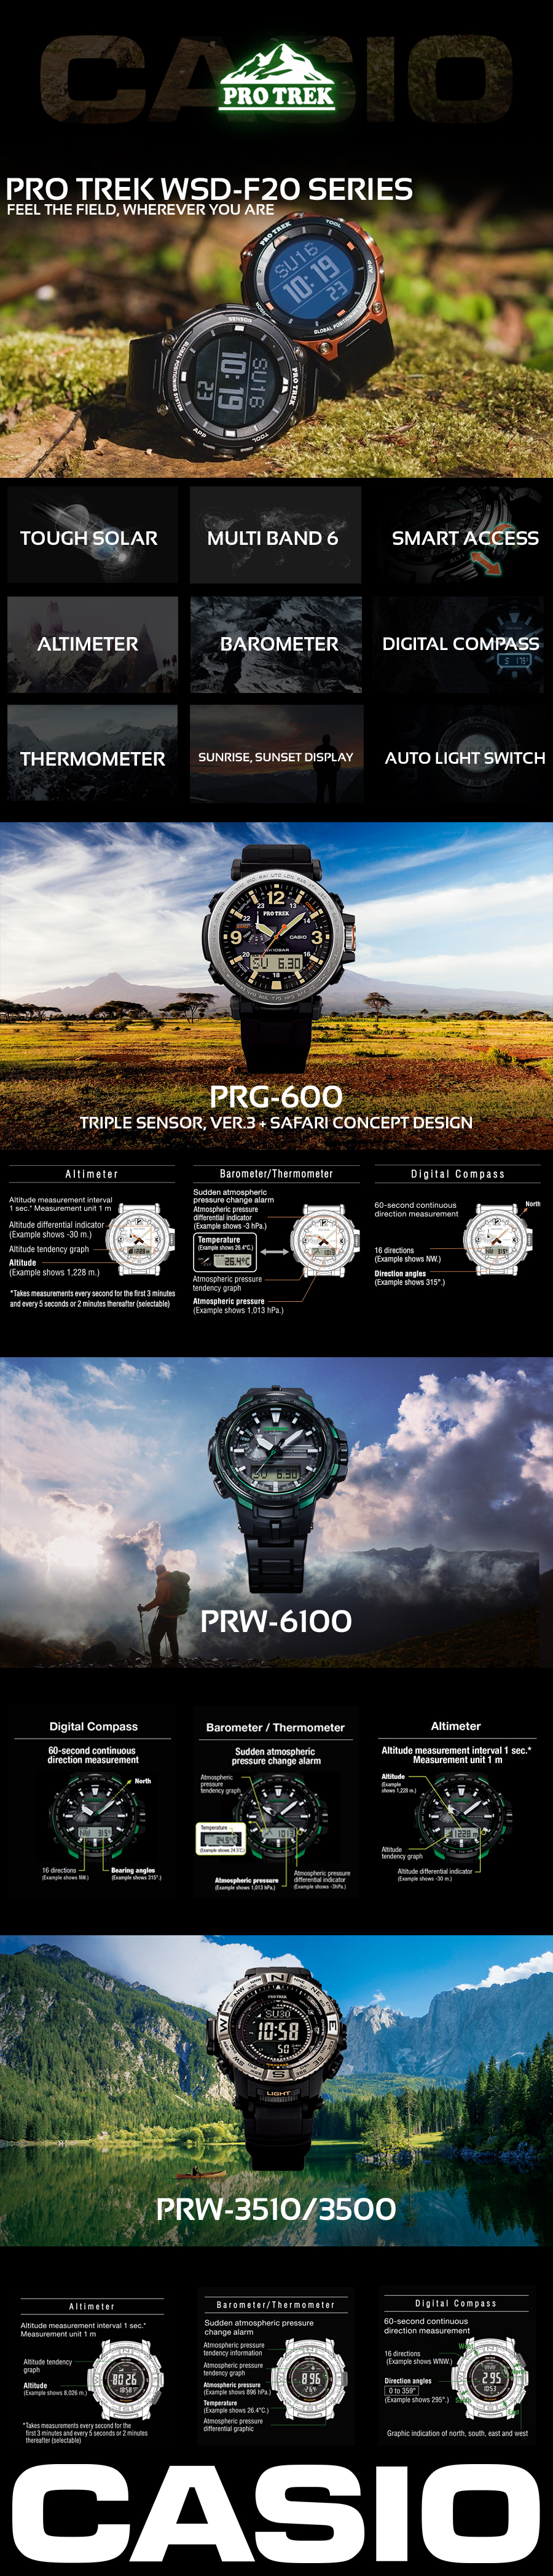 Casio Pro-Trek Infographic